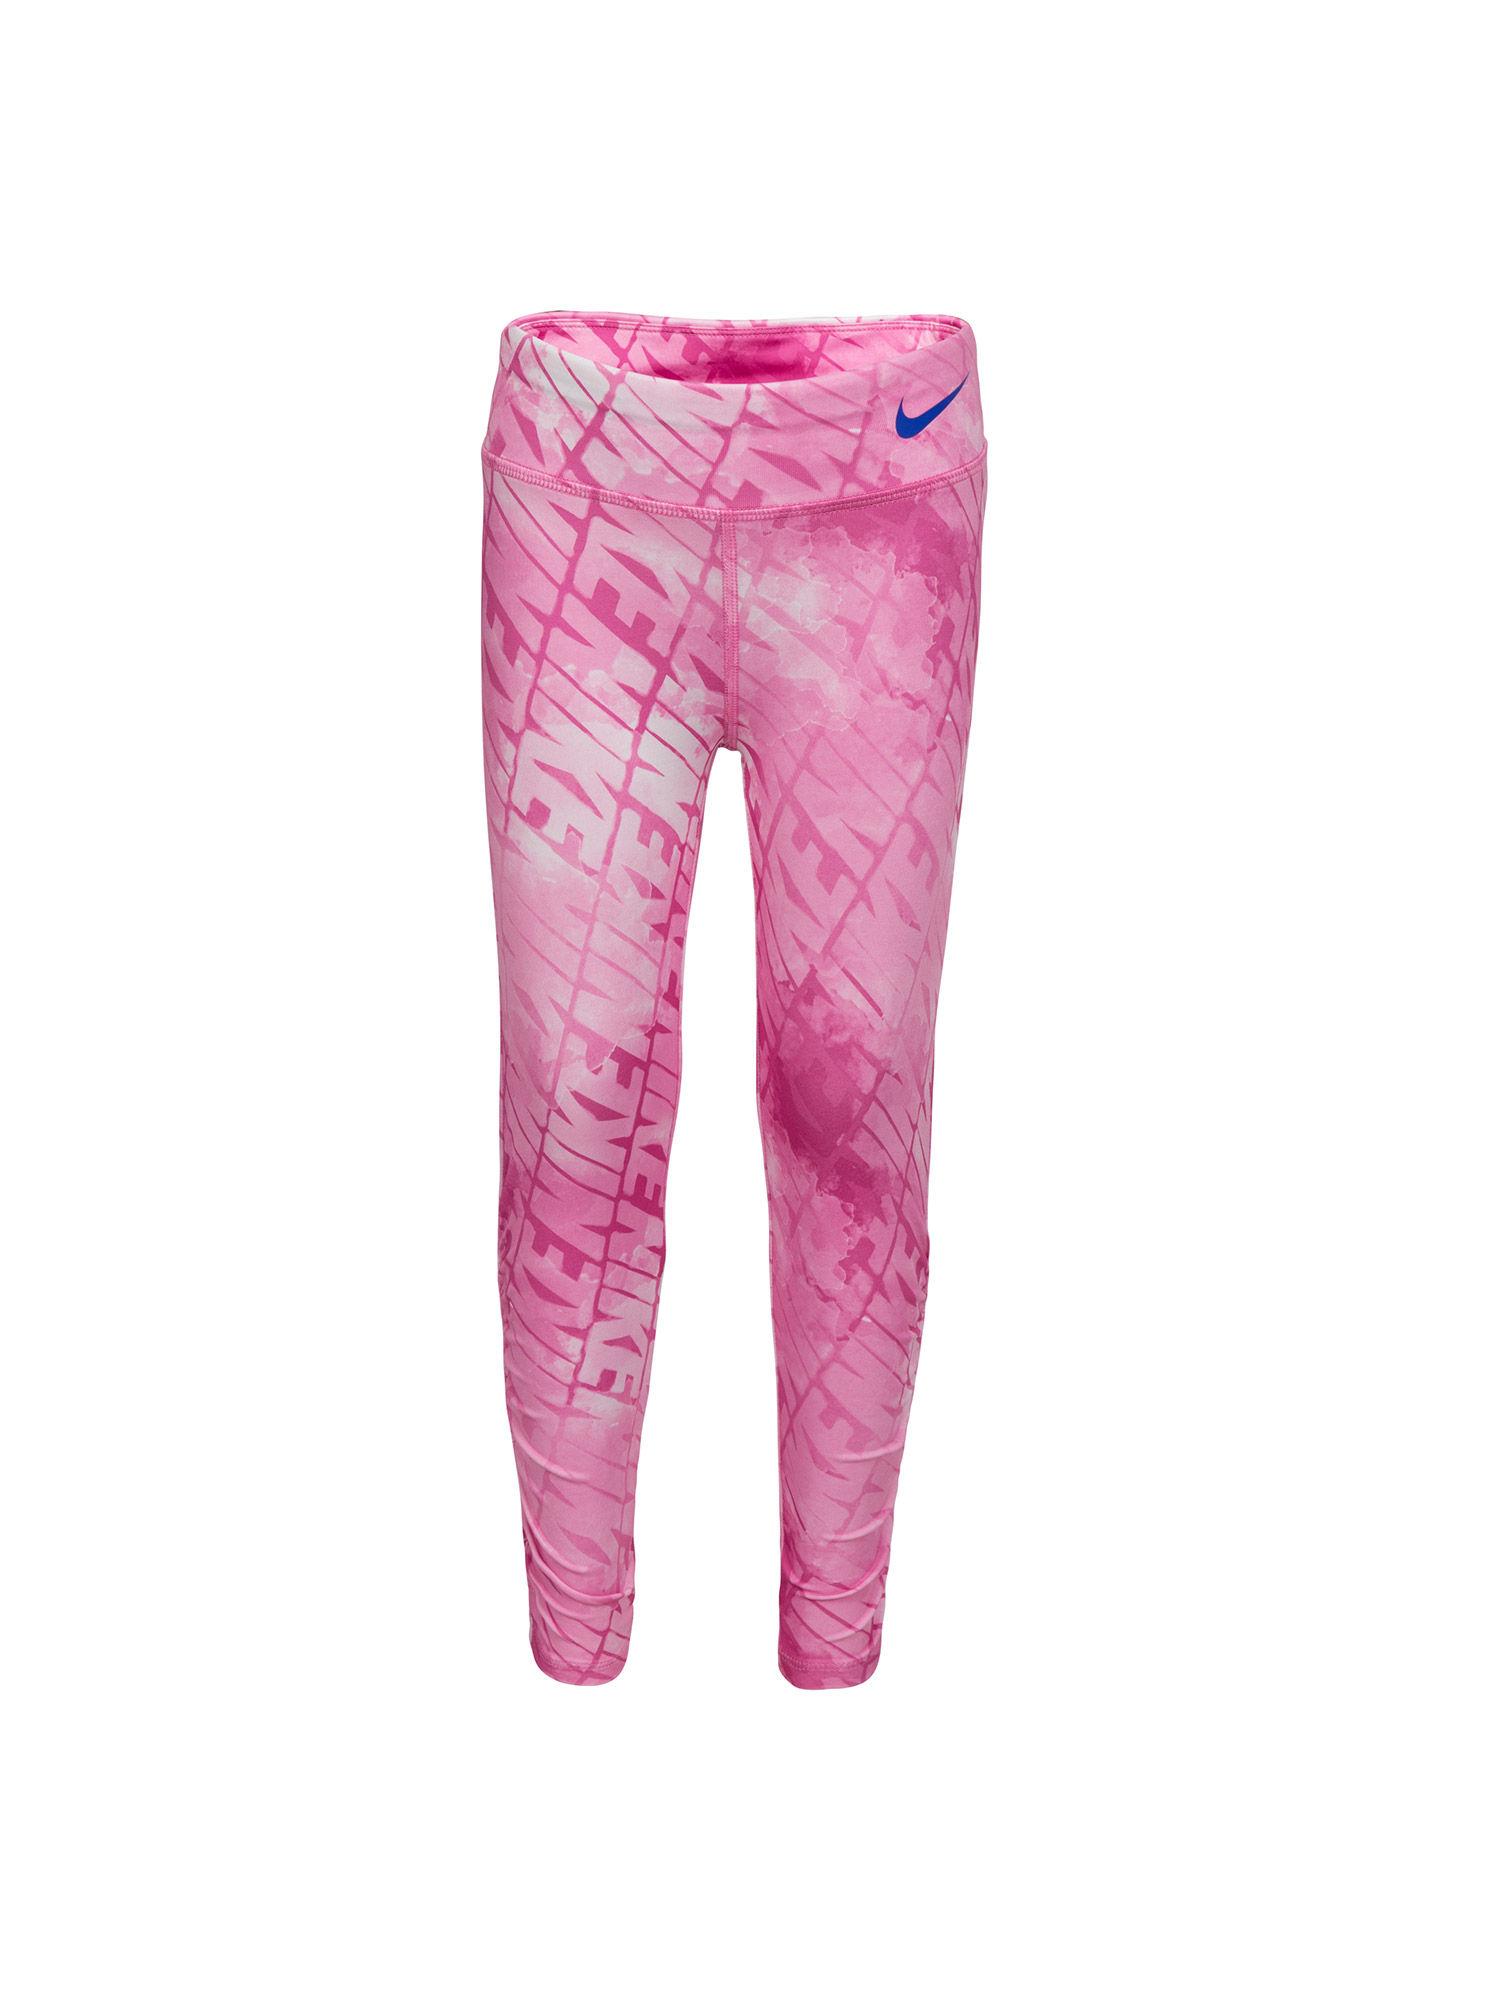 girls-pink-printed-bottoms